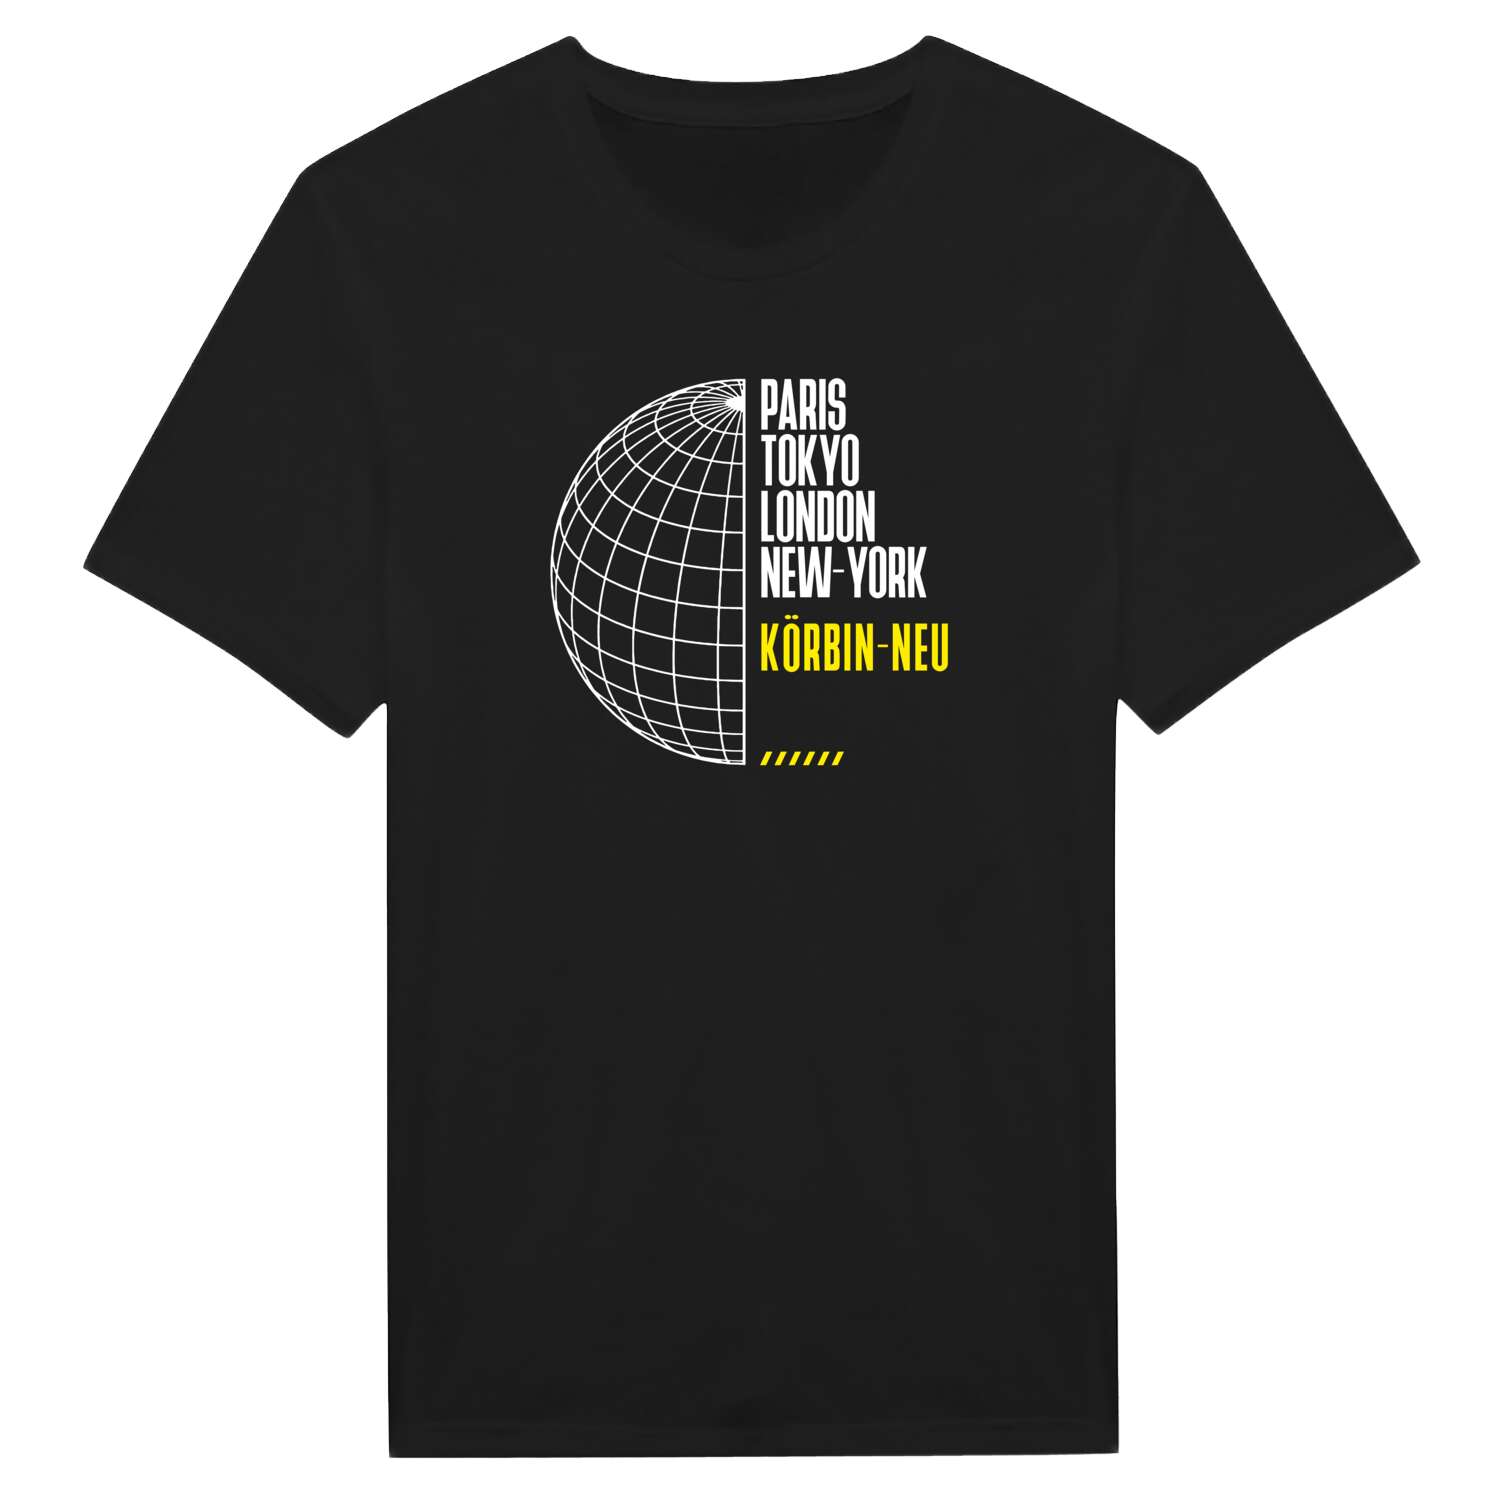 Körbin-Neu T-Shirt »Paris Tokyo London«